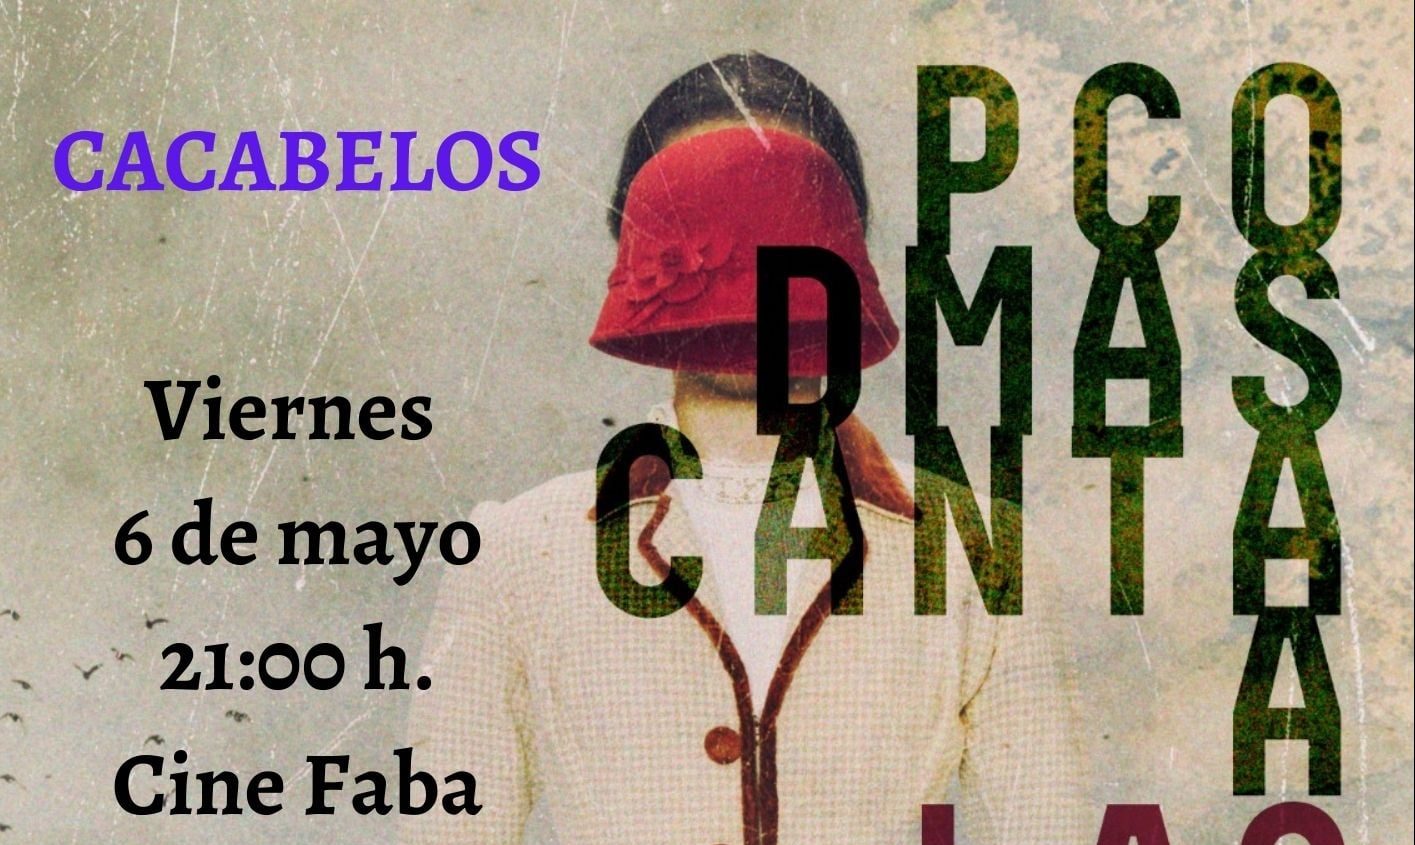 "Paco Damas canta a las Sinsombrero" el próximo 6 de mayo en Cacabelos 1